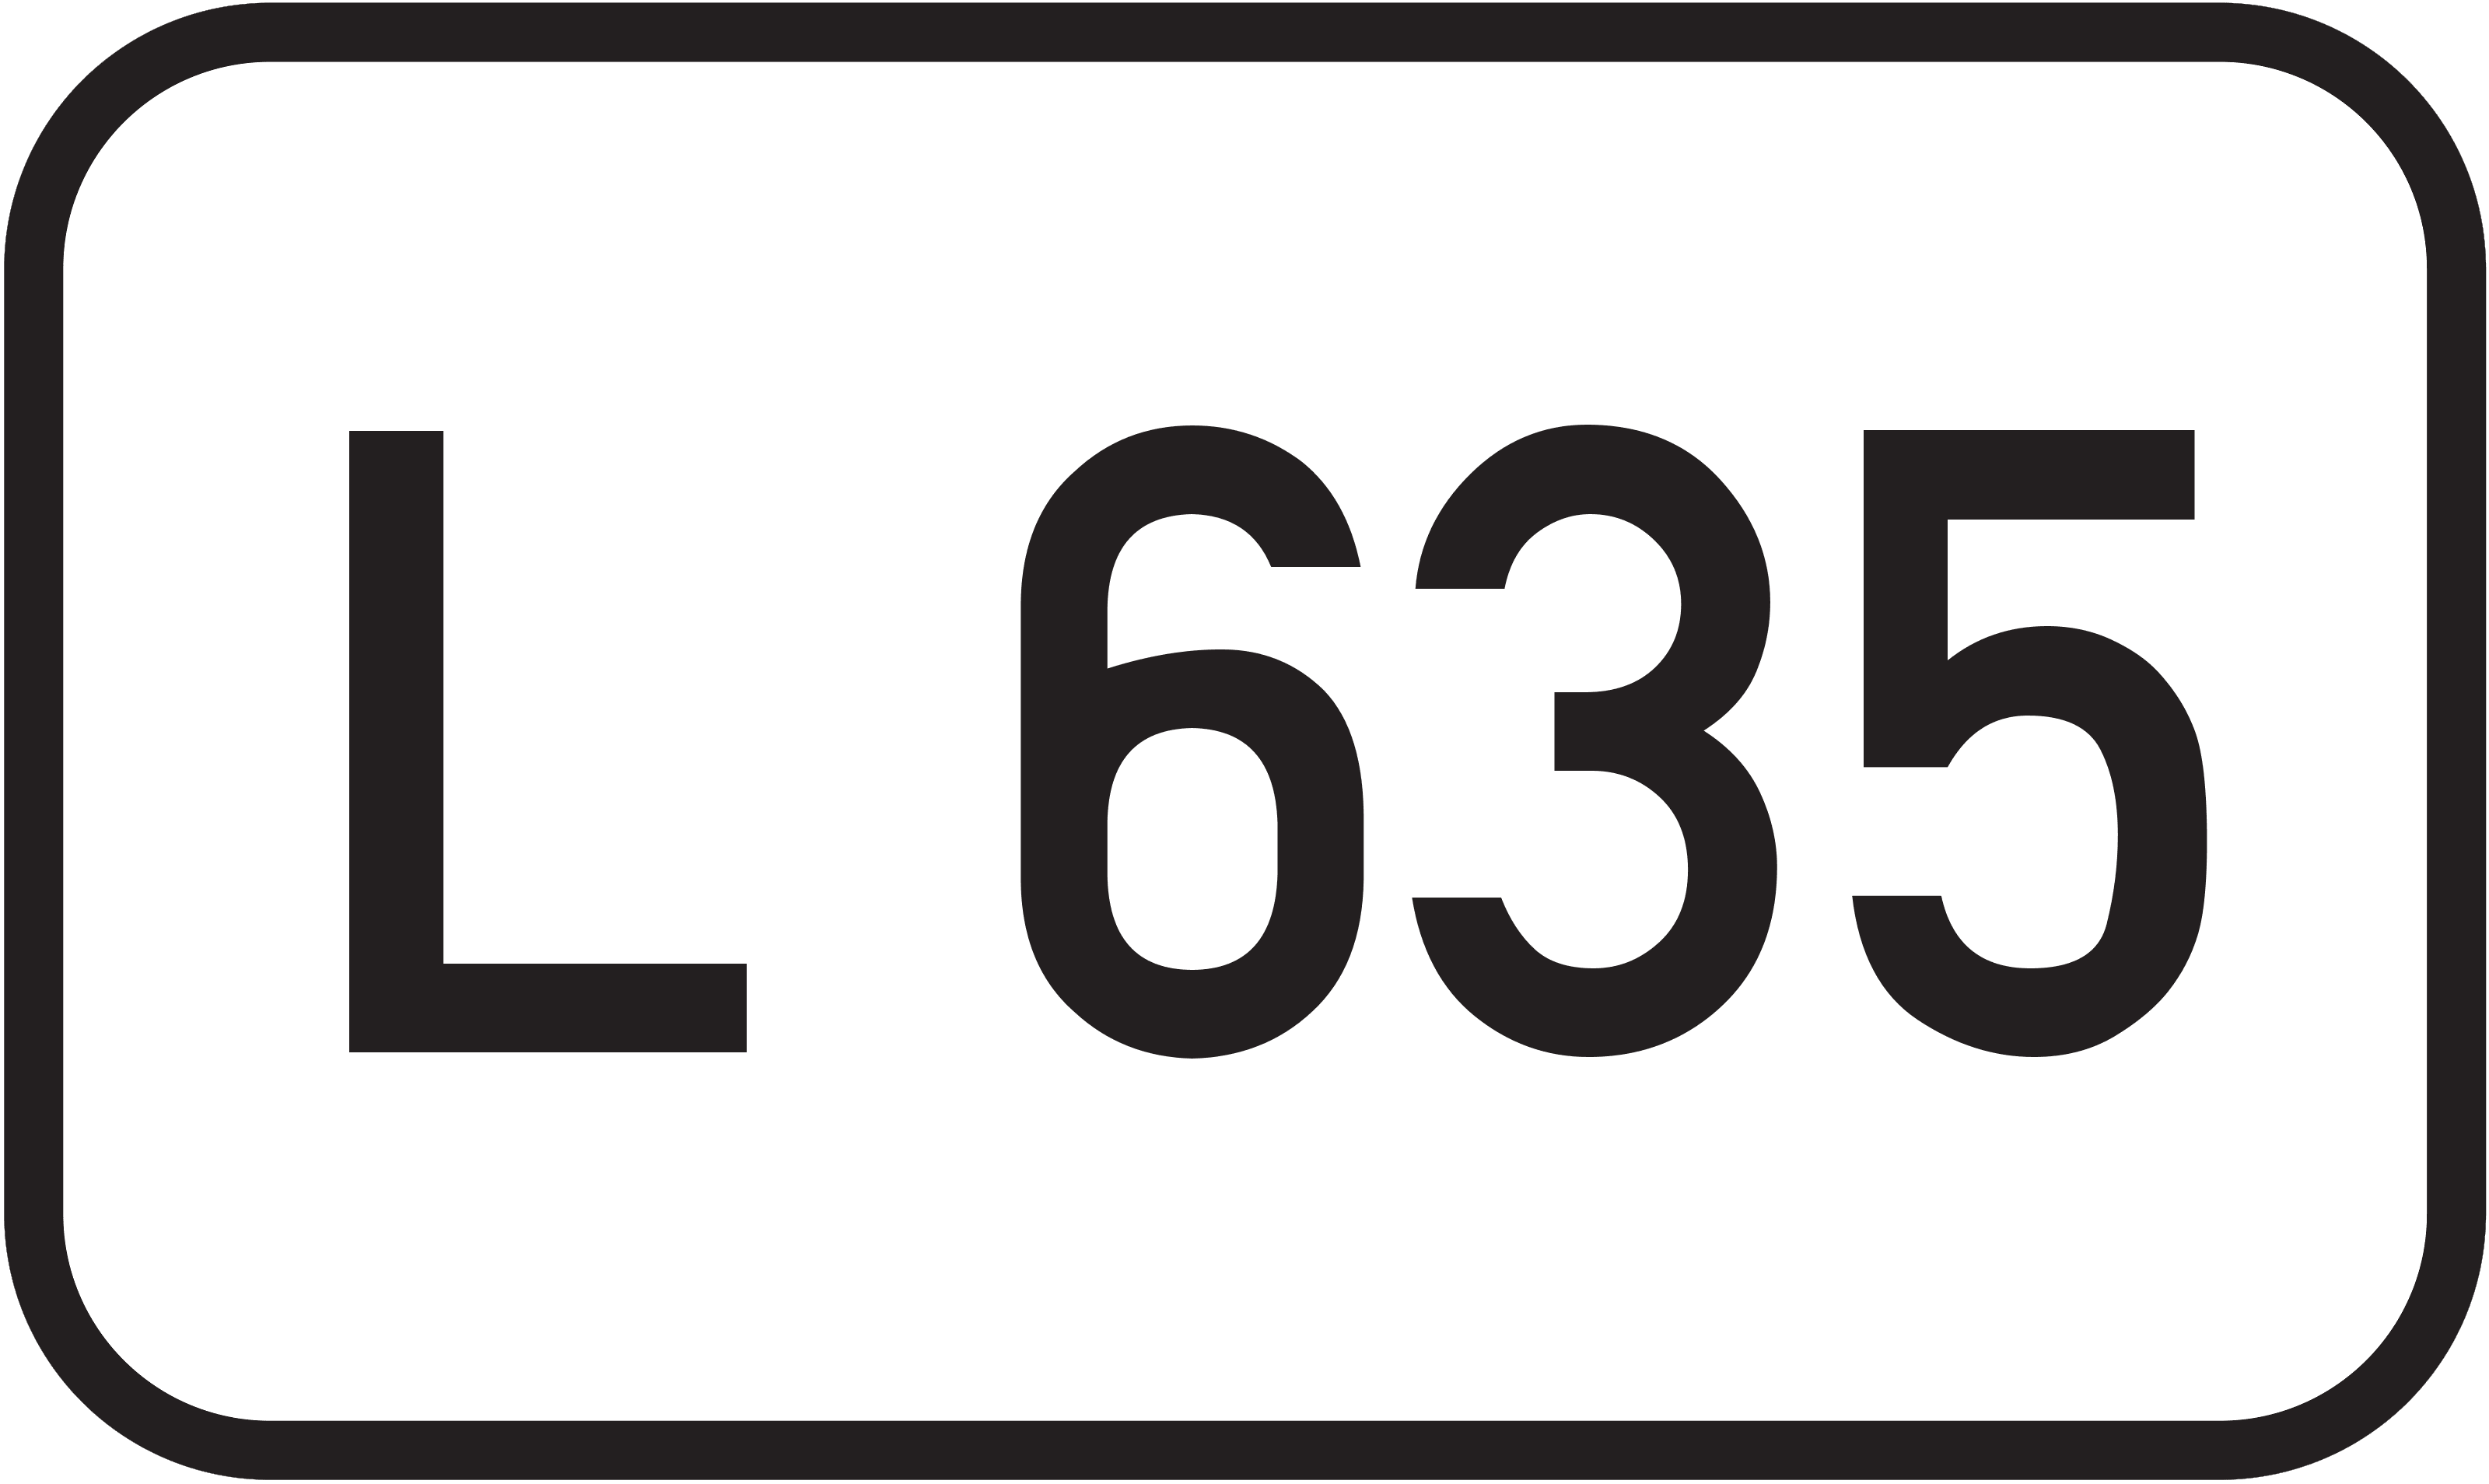 Landesstraße L 635